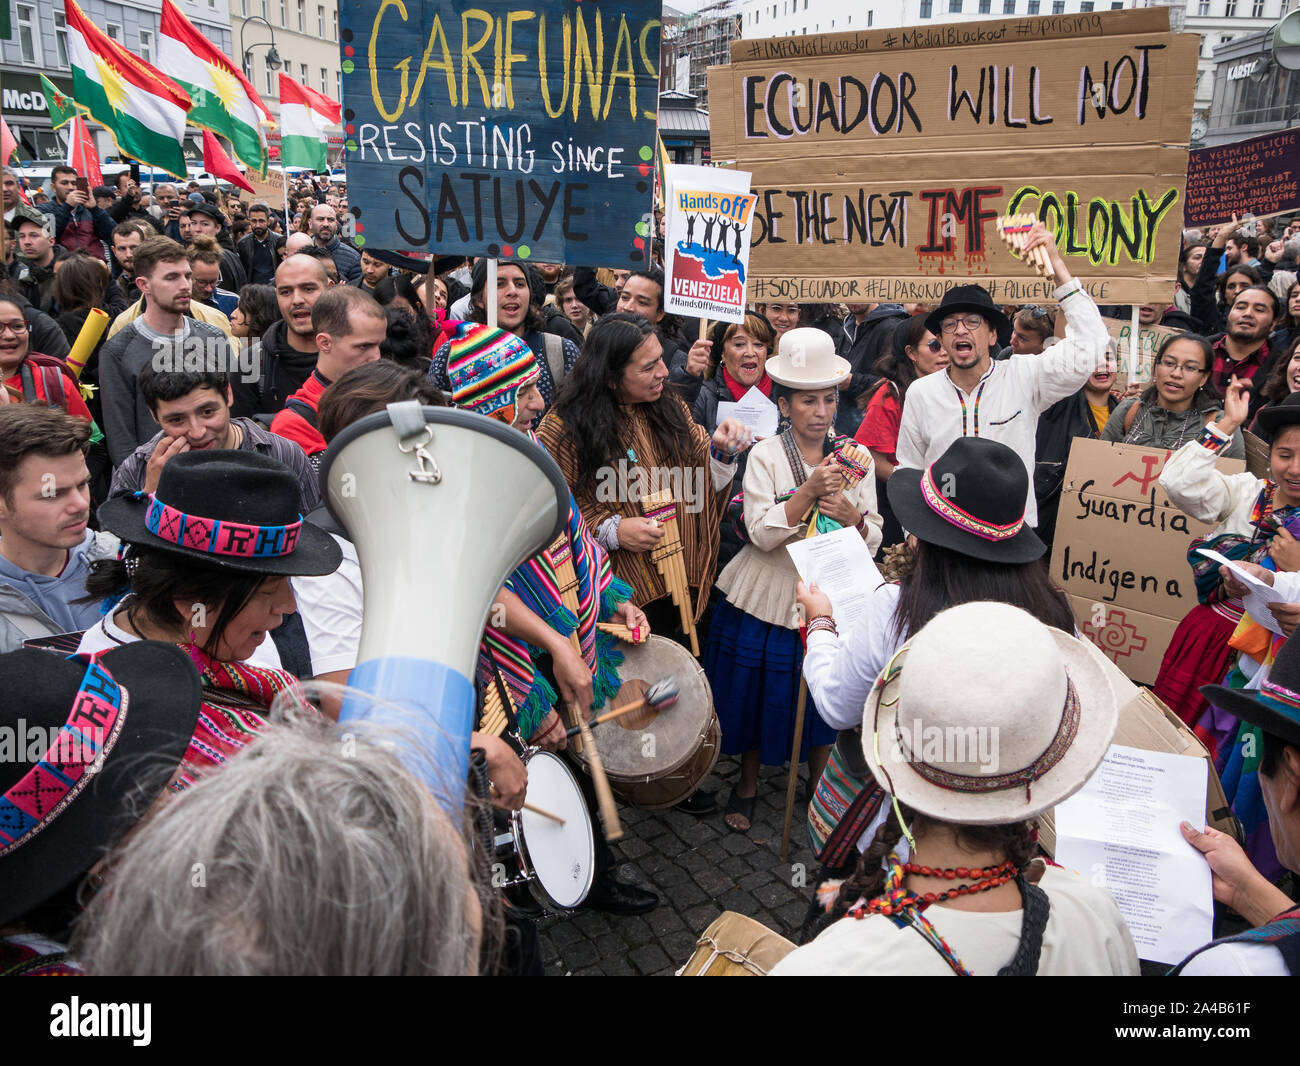 Demostración y protestar contra la política del Presidente Moreno en Ecuador, multitud de gente con ropa tradicional mostrando banners mientras reproduce música. Foto de stock